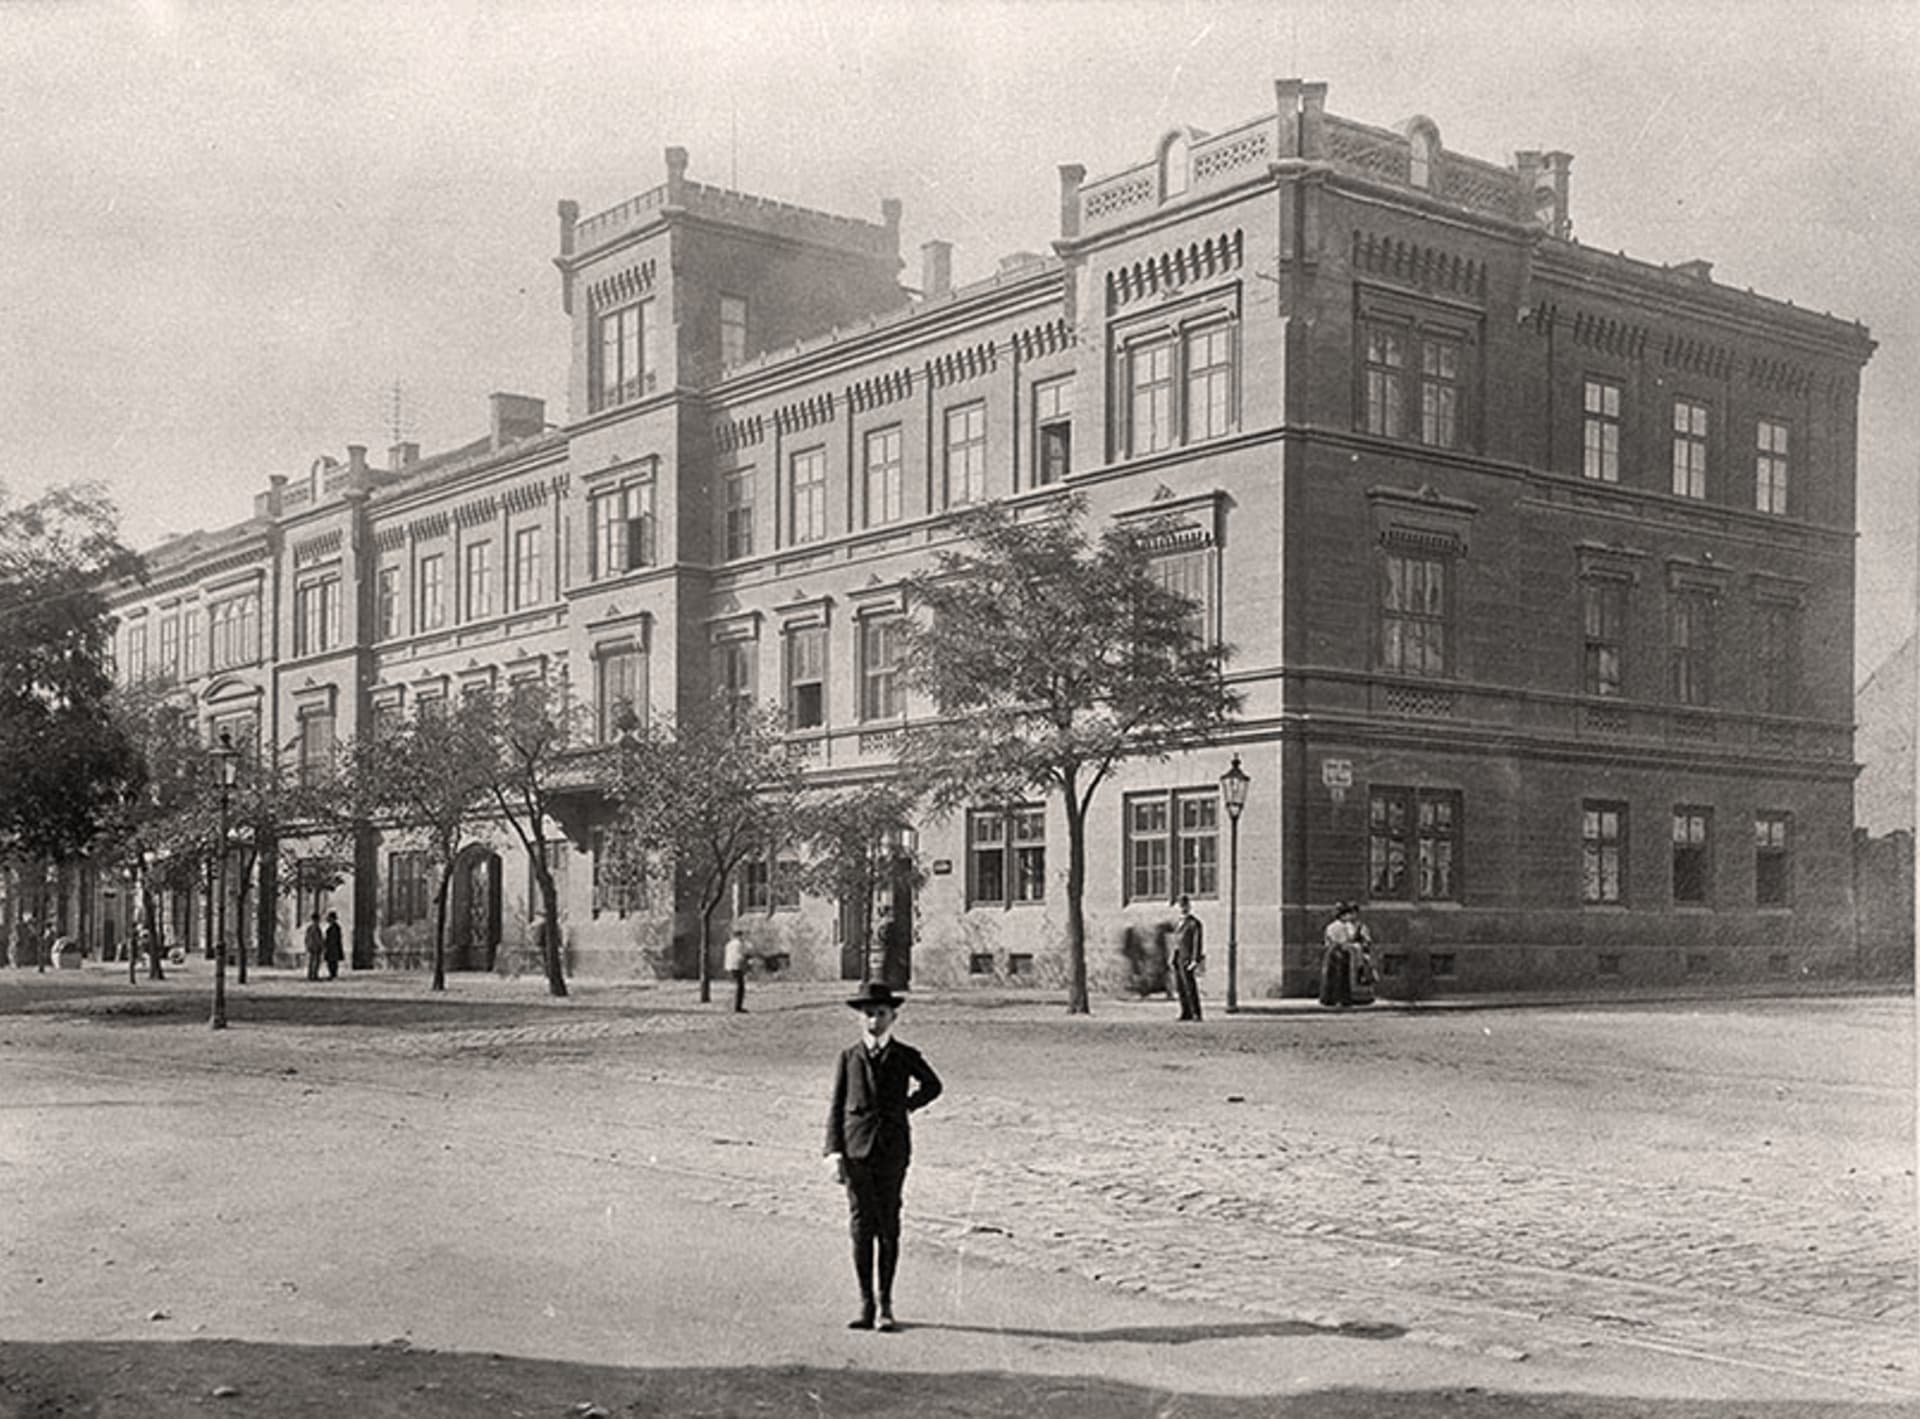 Fotografie z Muzea rodiny Škodů: Karel Škoda před Škodovým palácem